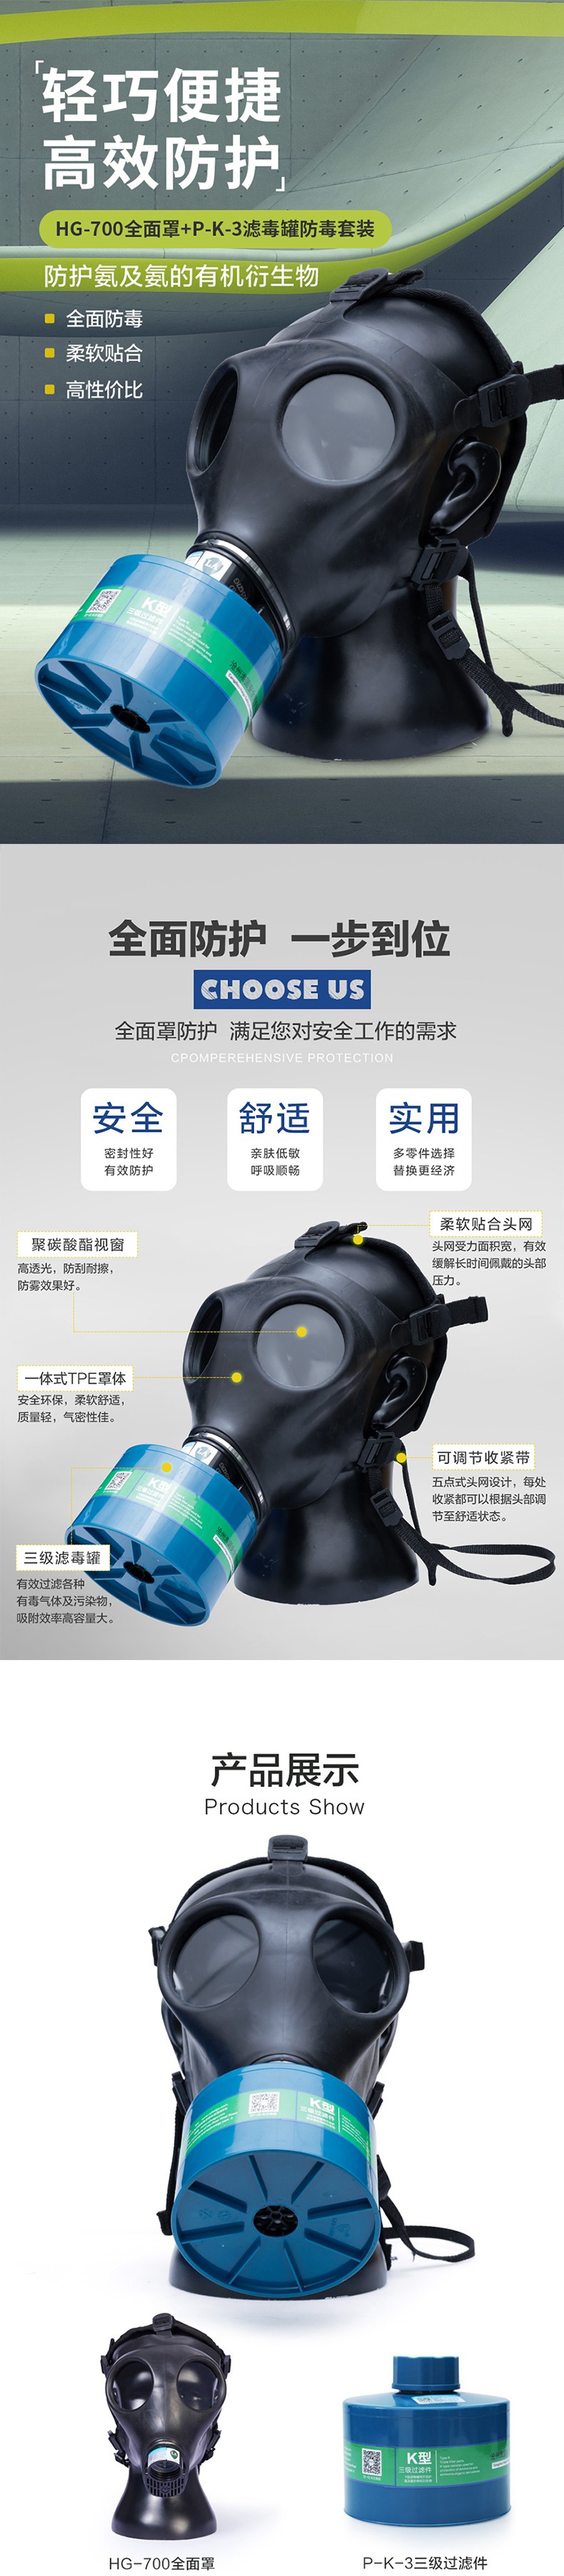 海固HG-700 P-K-3滤毒罐氨气全面罩防毒面具图片